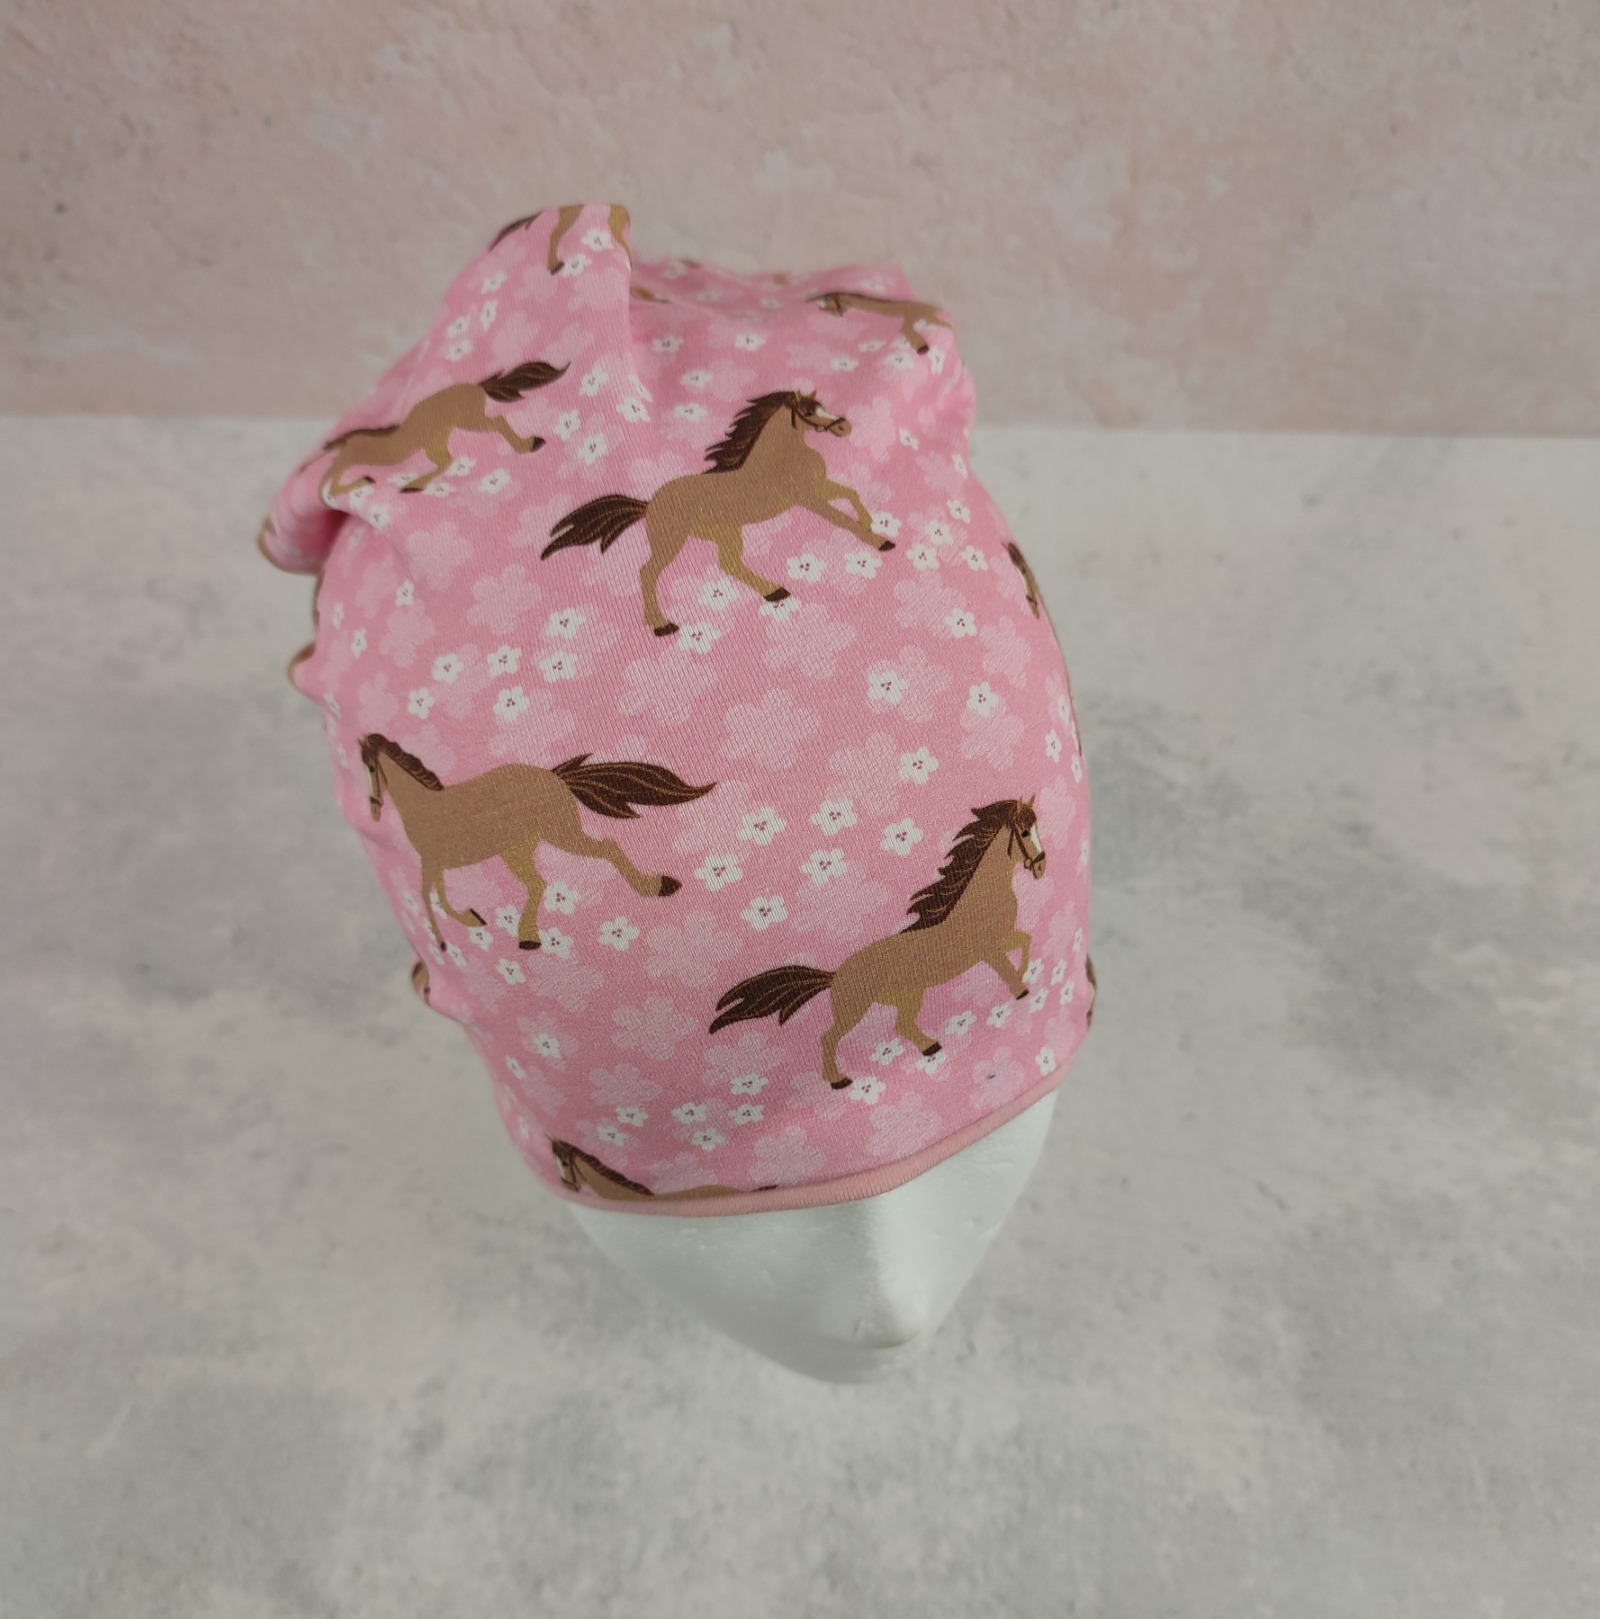 Beanie für kleine Mädchen - Kindermütze aus Jersey in rosa mit Pferden und Blumen Größe ca 44 - 48 cm Kopfumfang 3